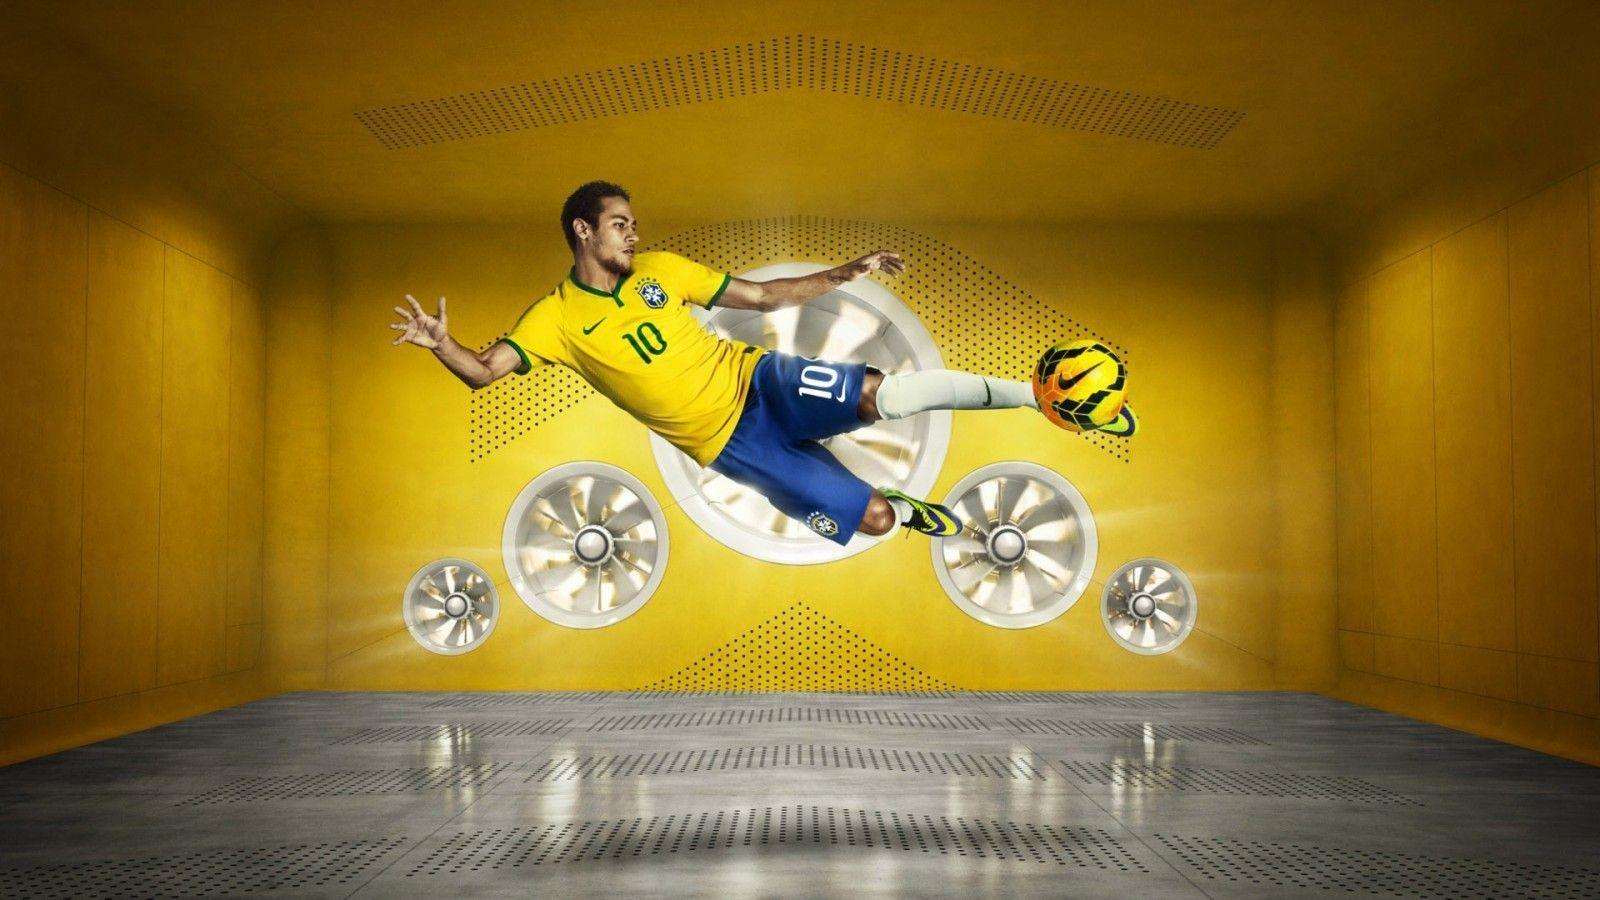 Neymar JR 2014 World Cup Brazil Nike Wallpaper Wide or HD. Male